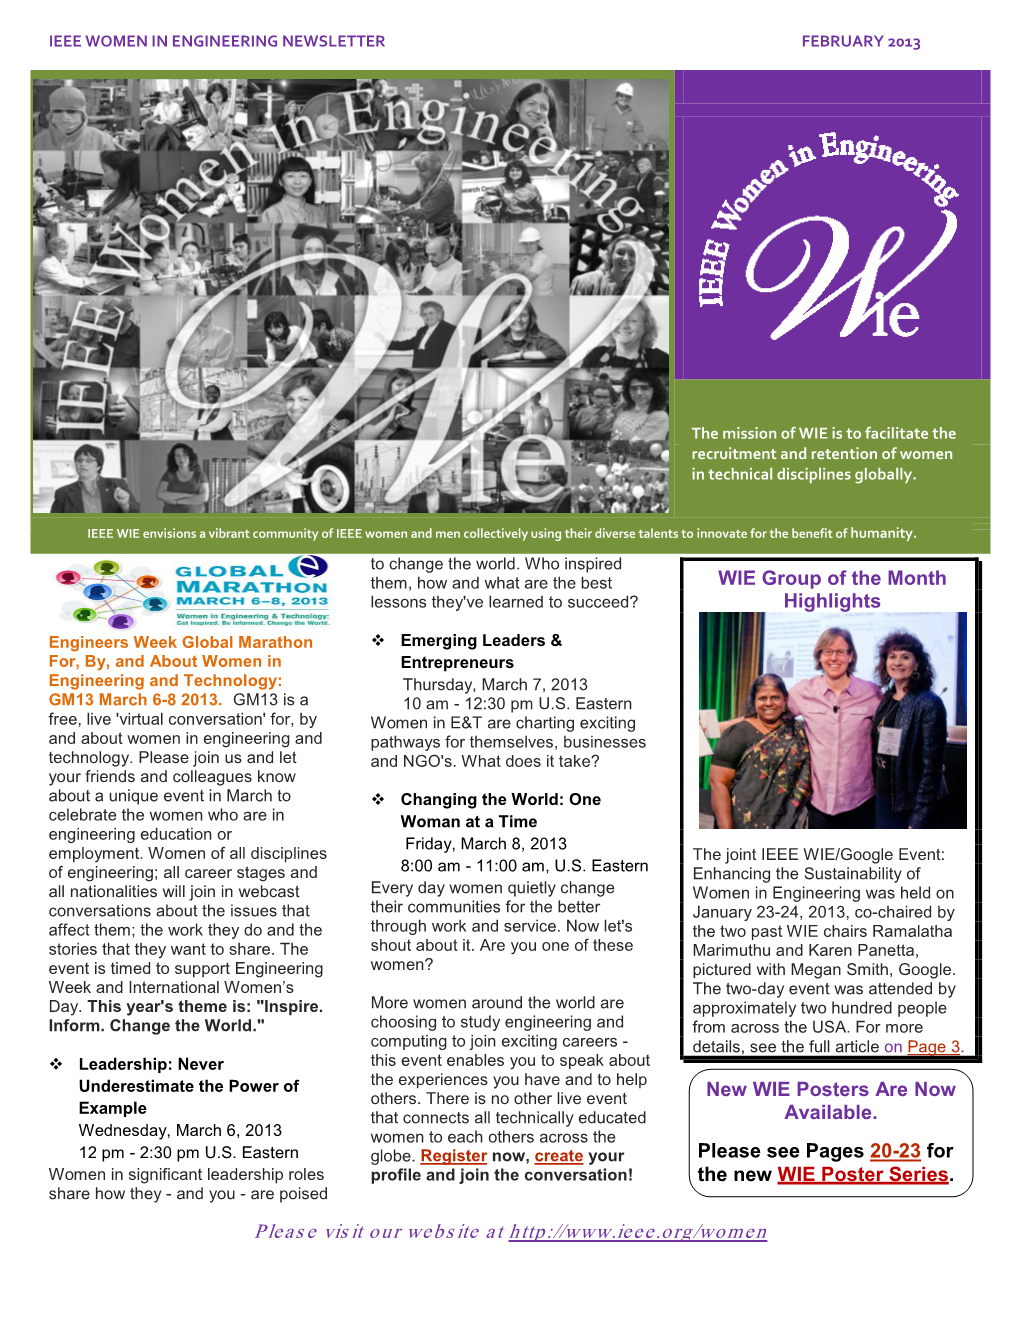 WIE Newsletter, February 2013